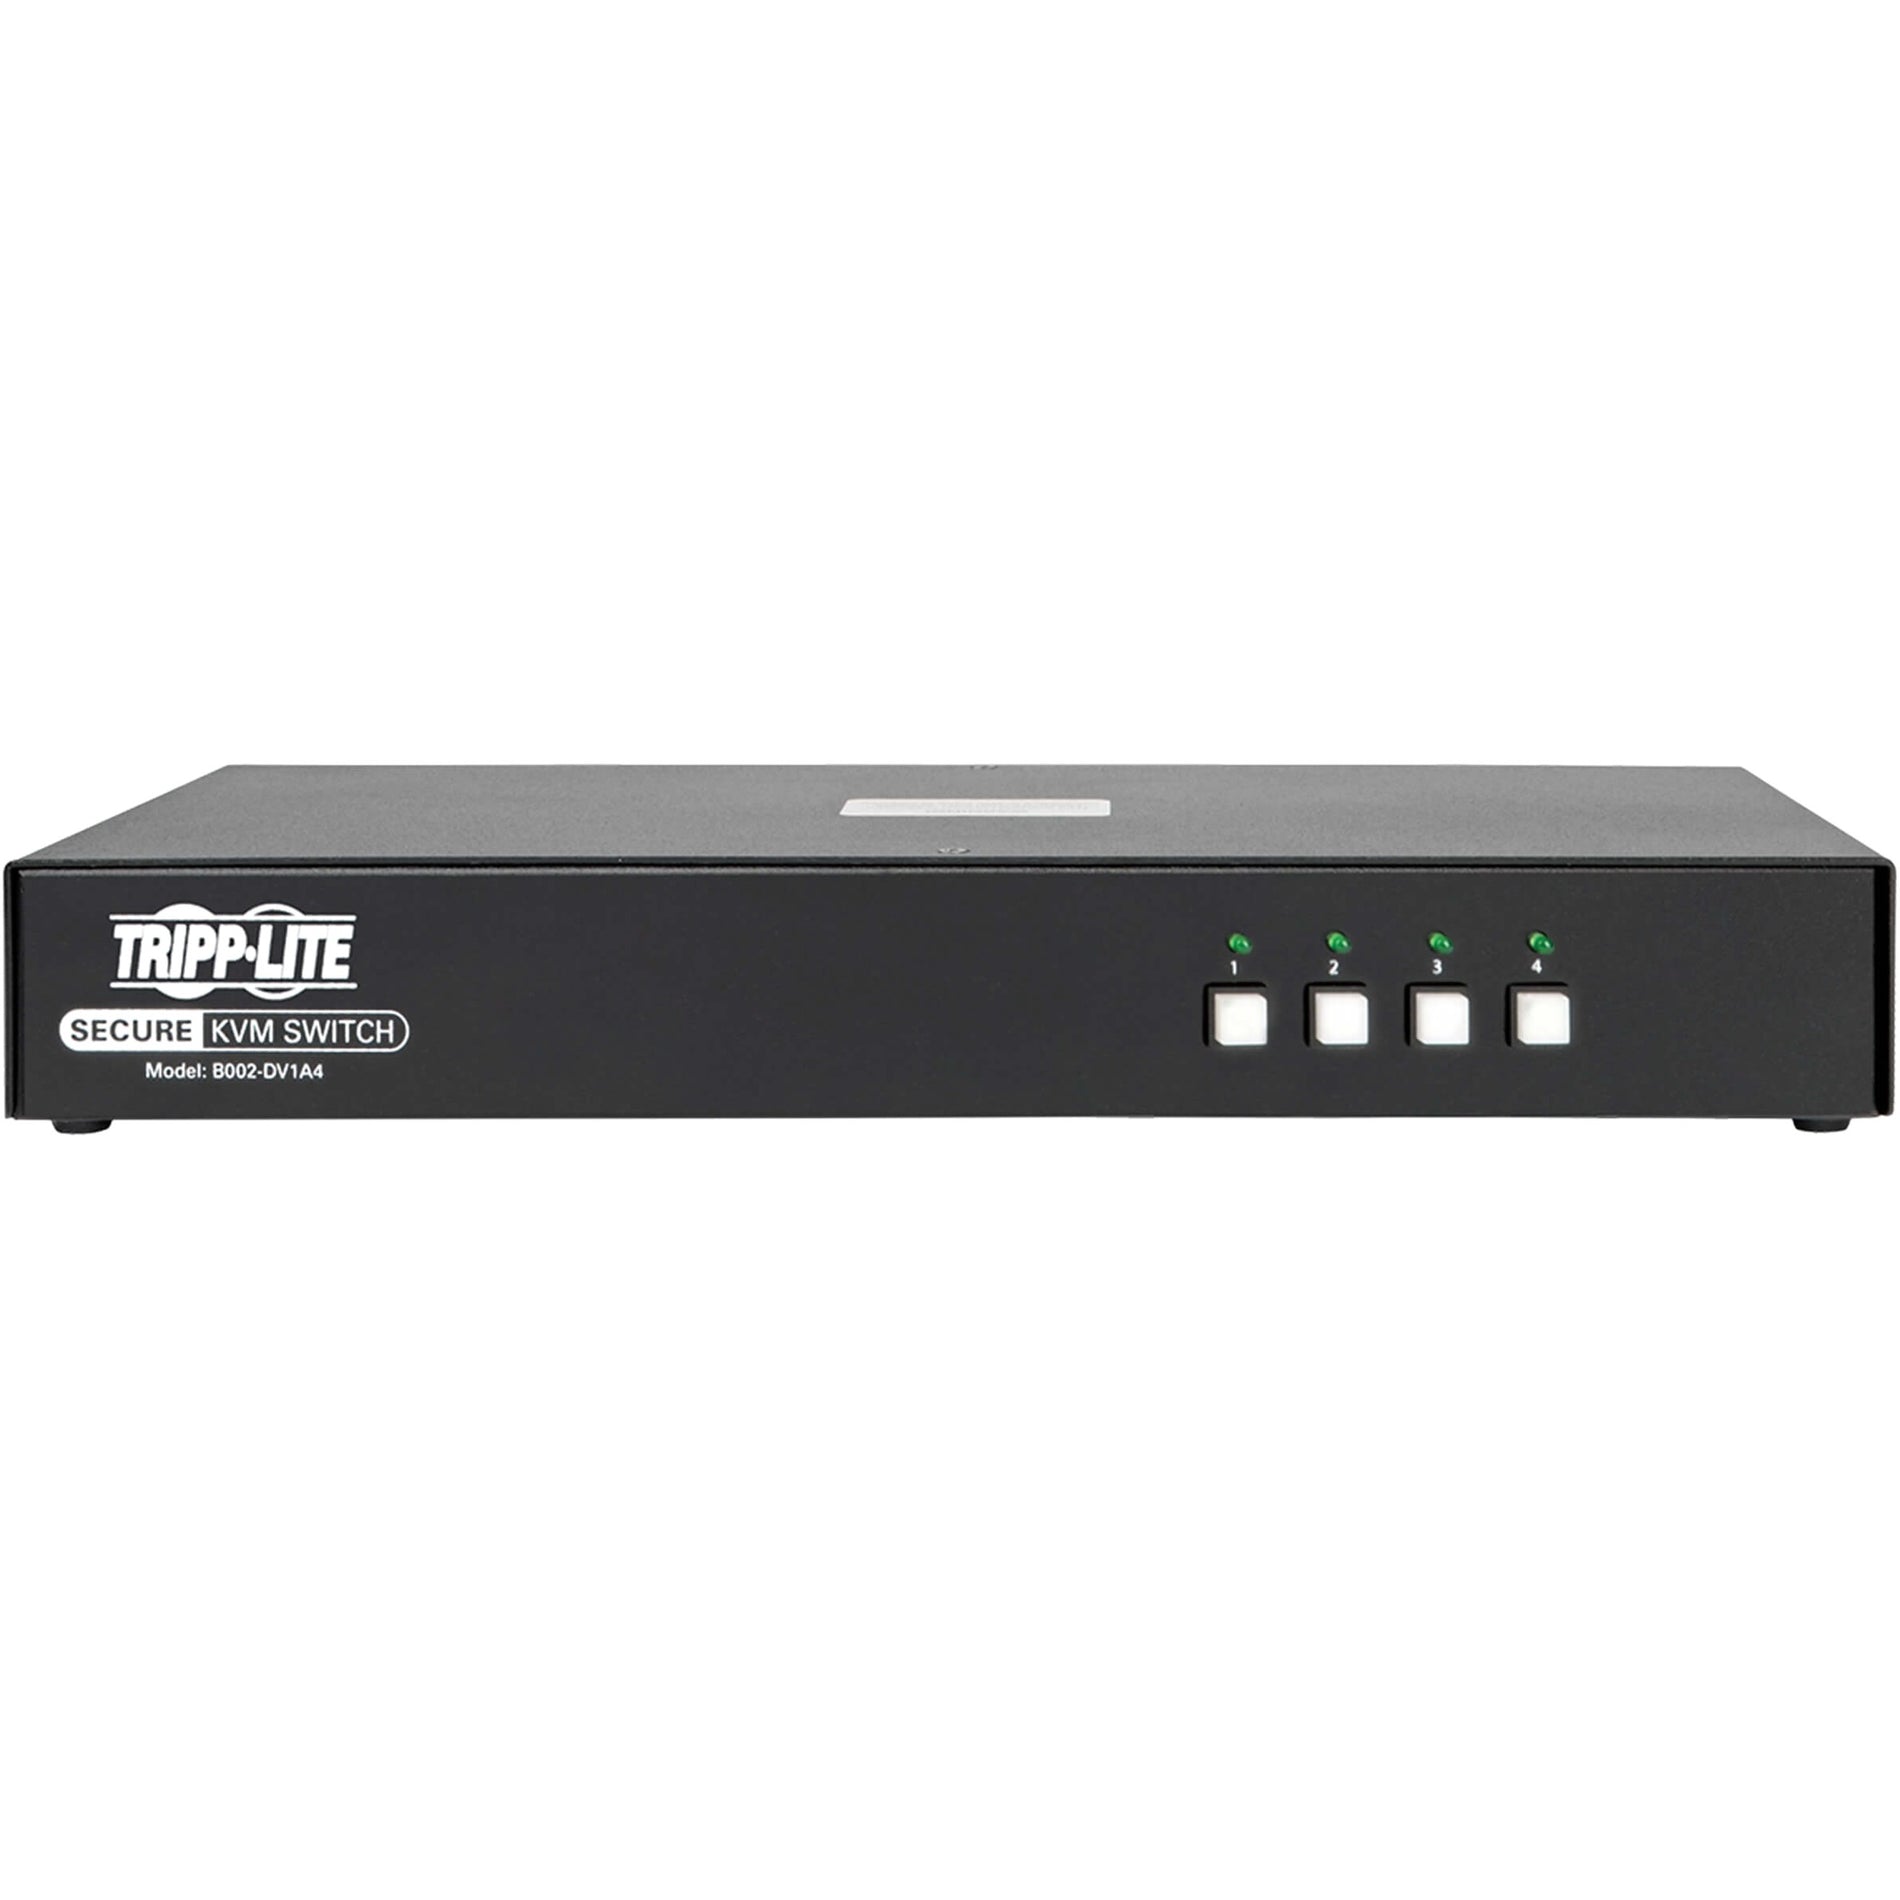 Tripp Lite B002-DV1A4 4-端 NIAP PP3.0-认证 DVI-I KVM 开关 最大视频分辨率 2560 x 1600 3 年保修  Tripp Lite 特力品